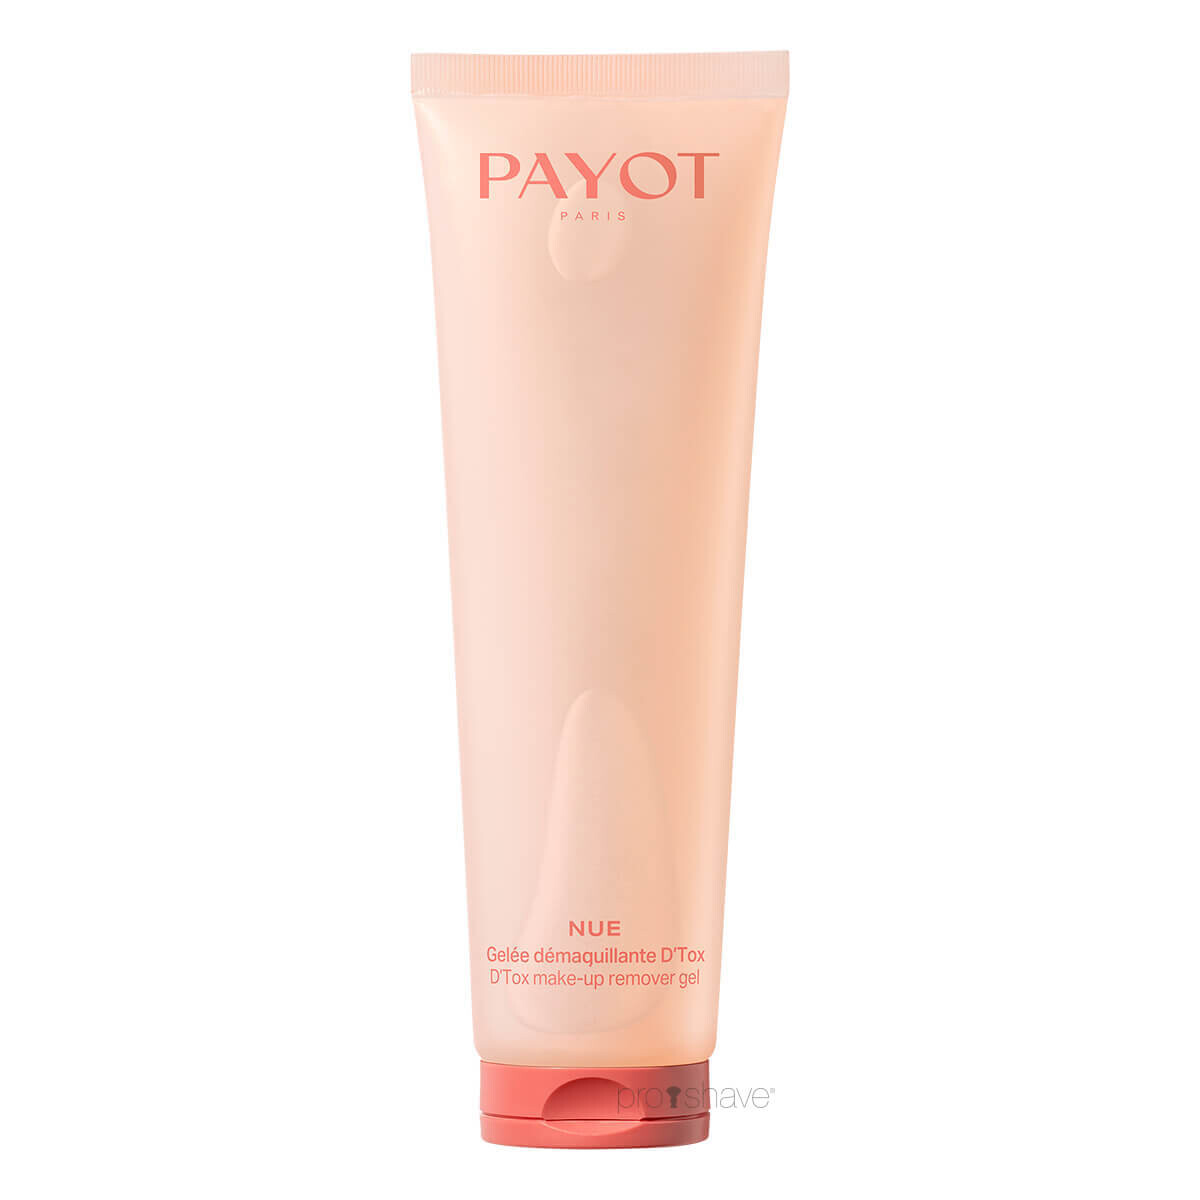 Se Payot Nue D'Tox Make-up Remover Gel, 150 ml. hos Proshave